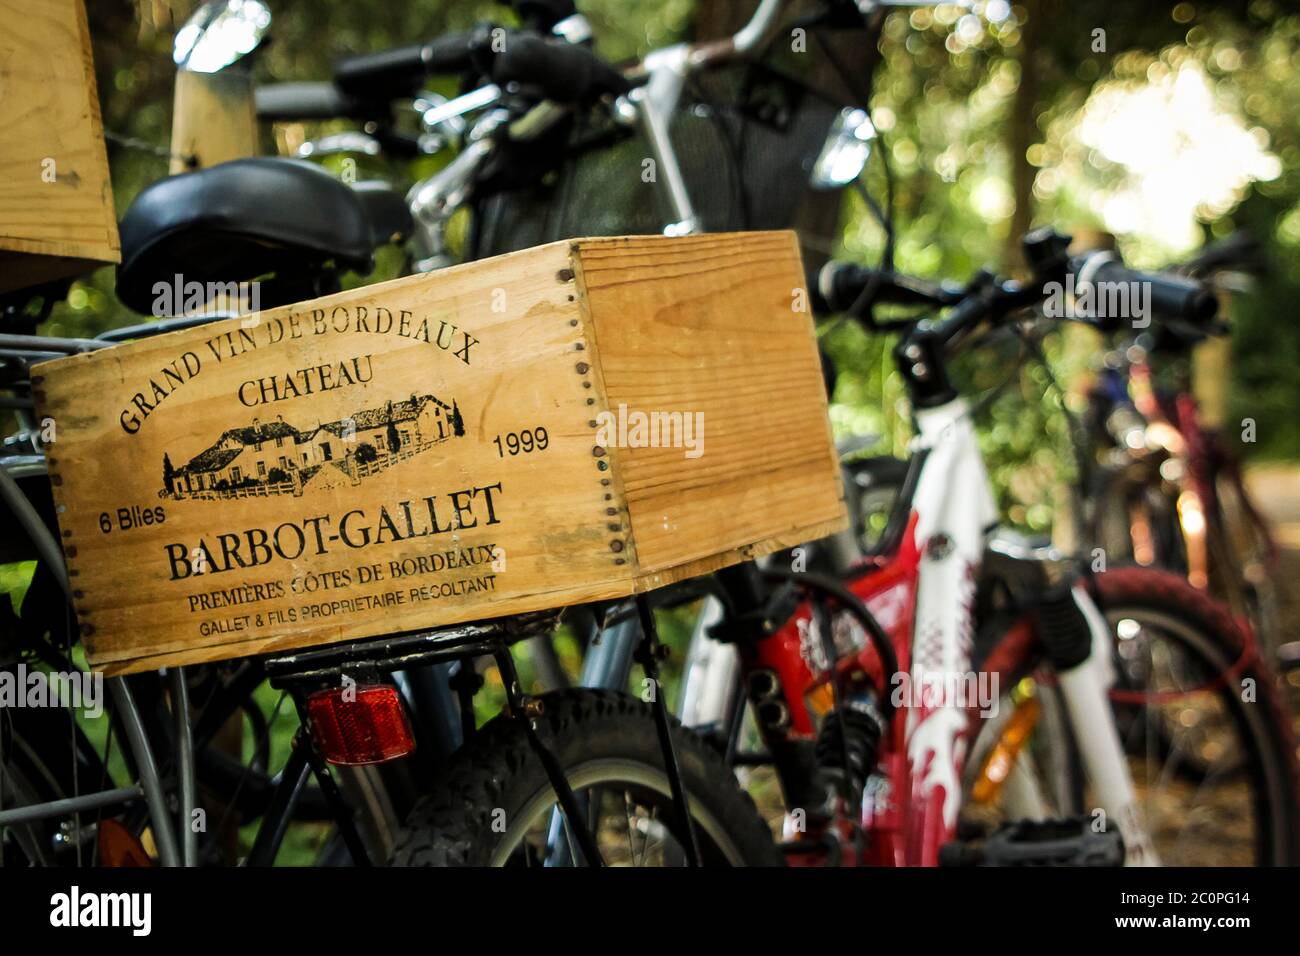 La cassa francese di legno del vino è fissata sul retro di una bicicletta a Noirmoutier, un'isola al largo della costa occidentale della Francia Foto Stock